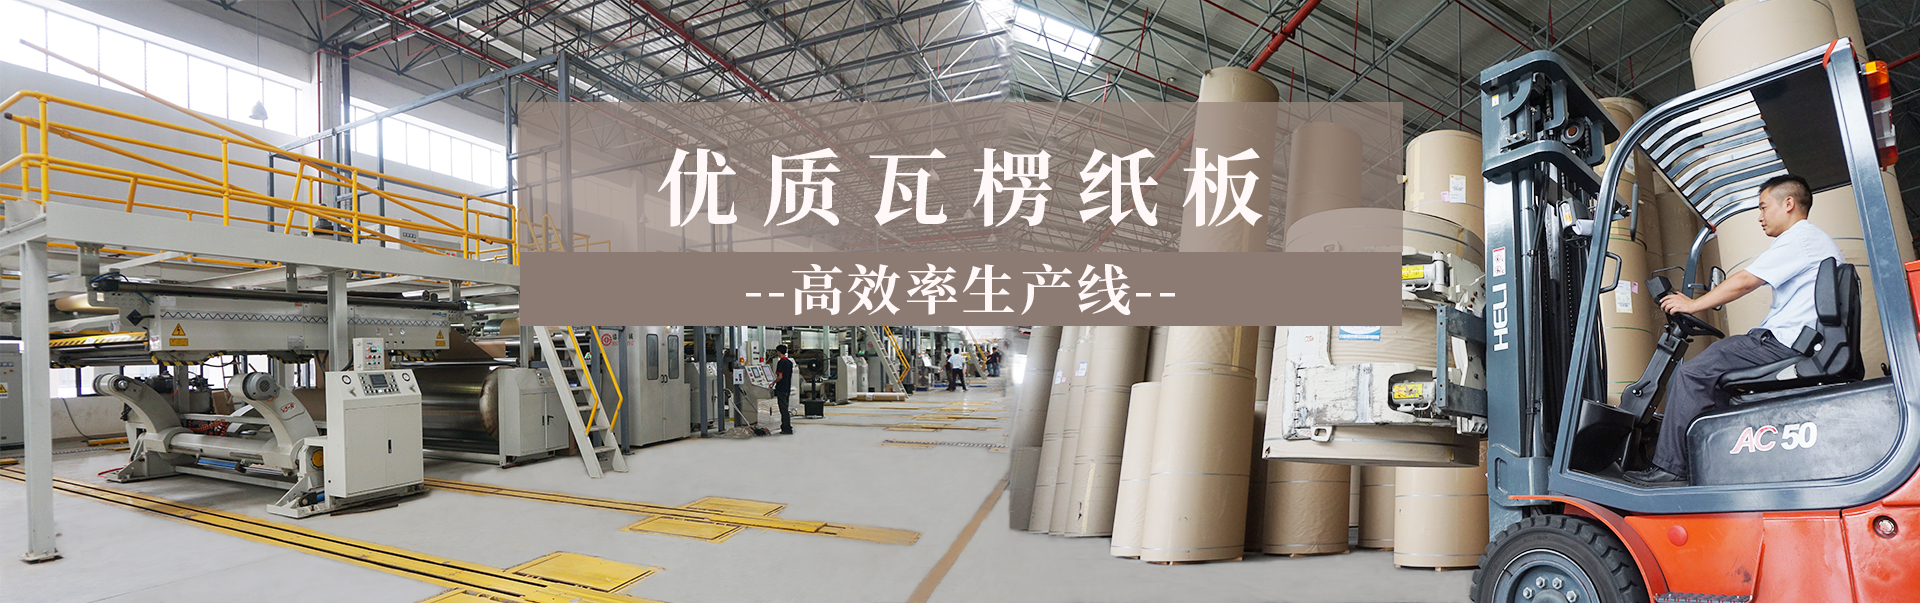 瓦楞纸板批发生产工厂找沐鸣2平台52年工厂